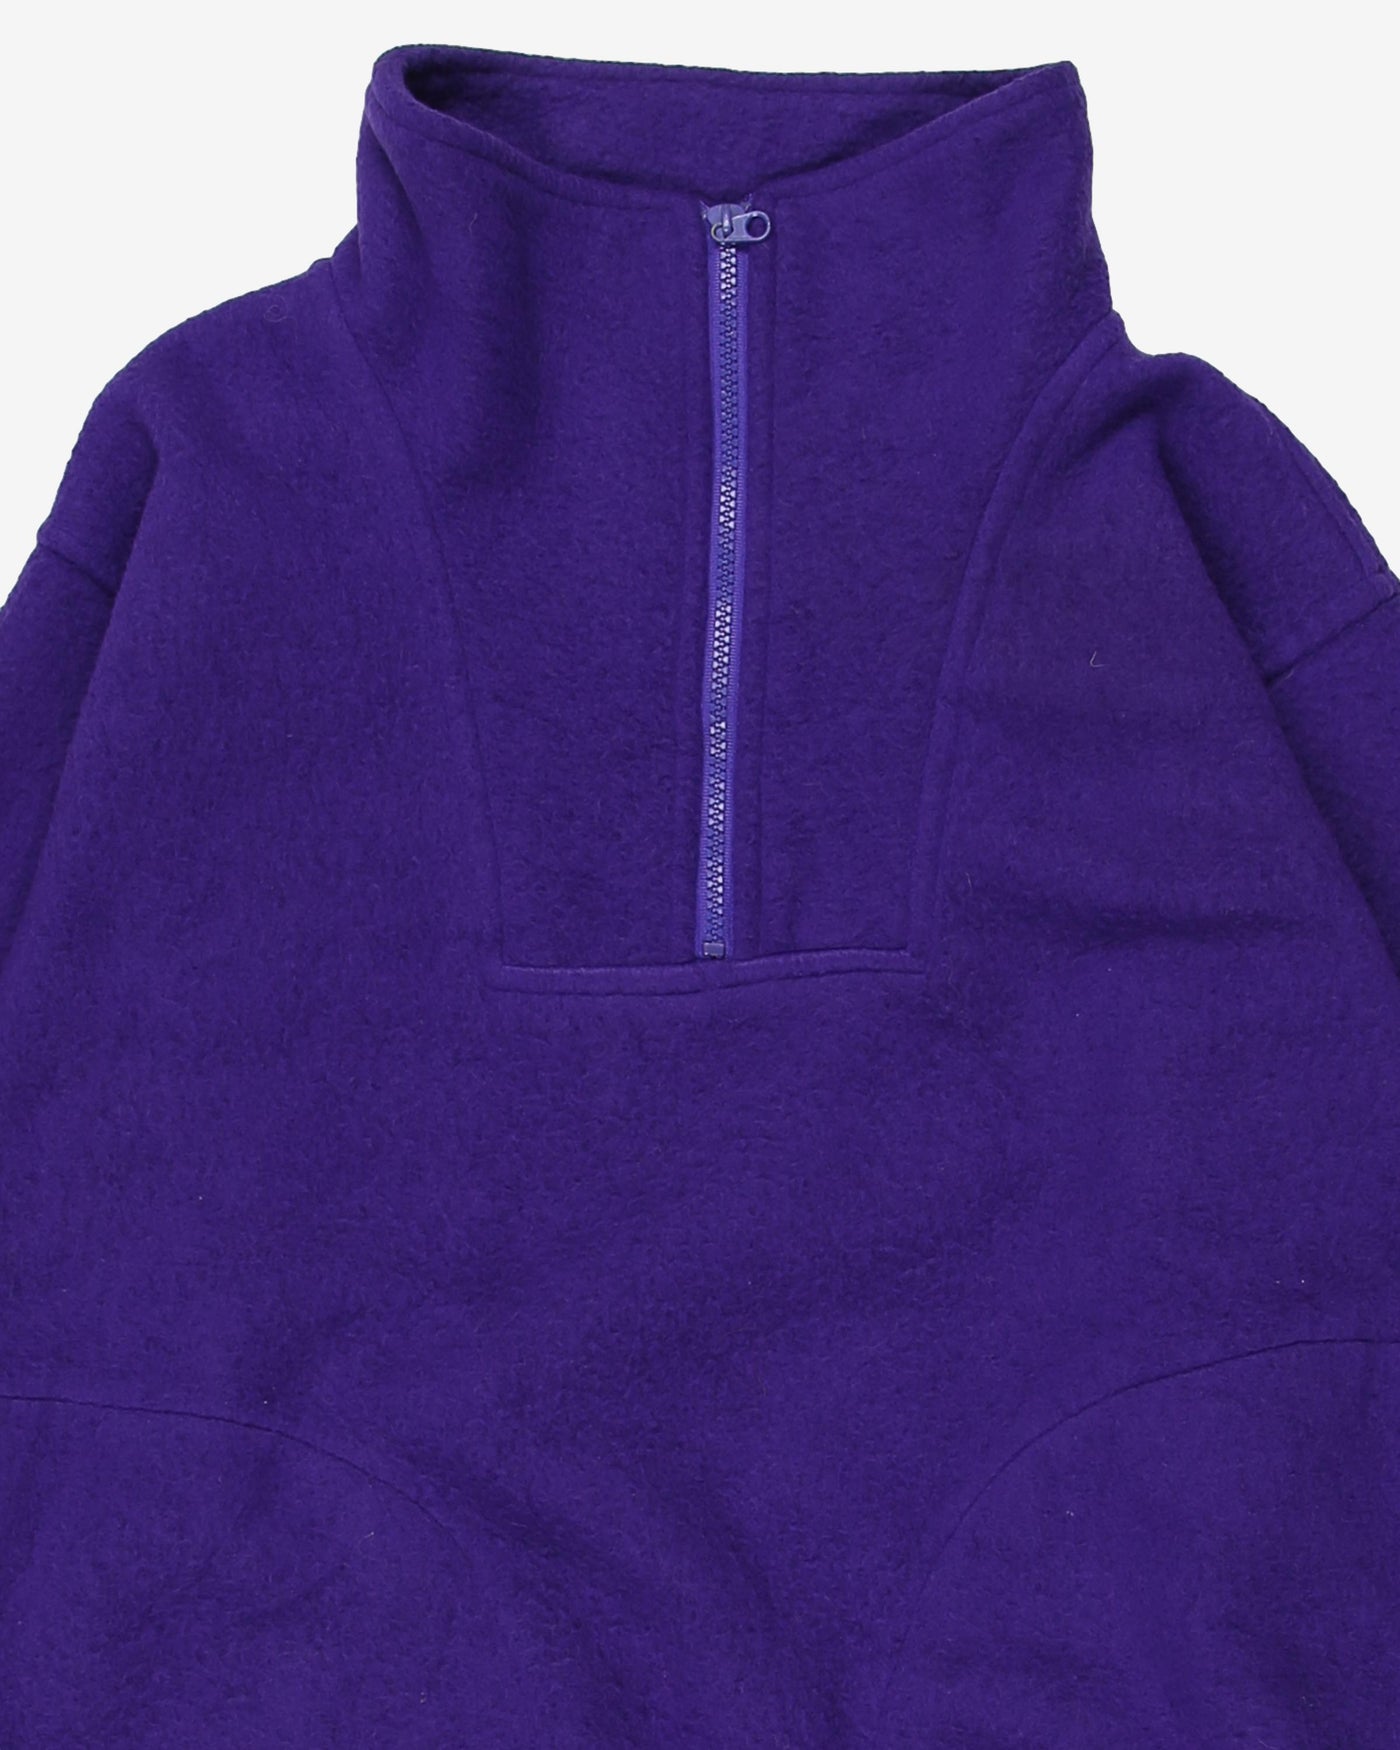 Vintage Woodwynn Purple Quarter-Zip Fleece - S